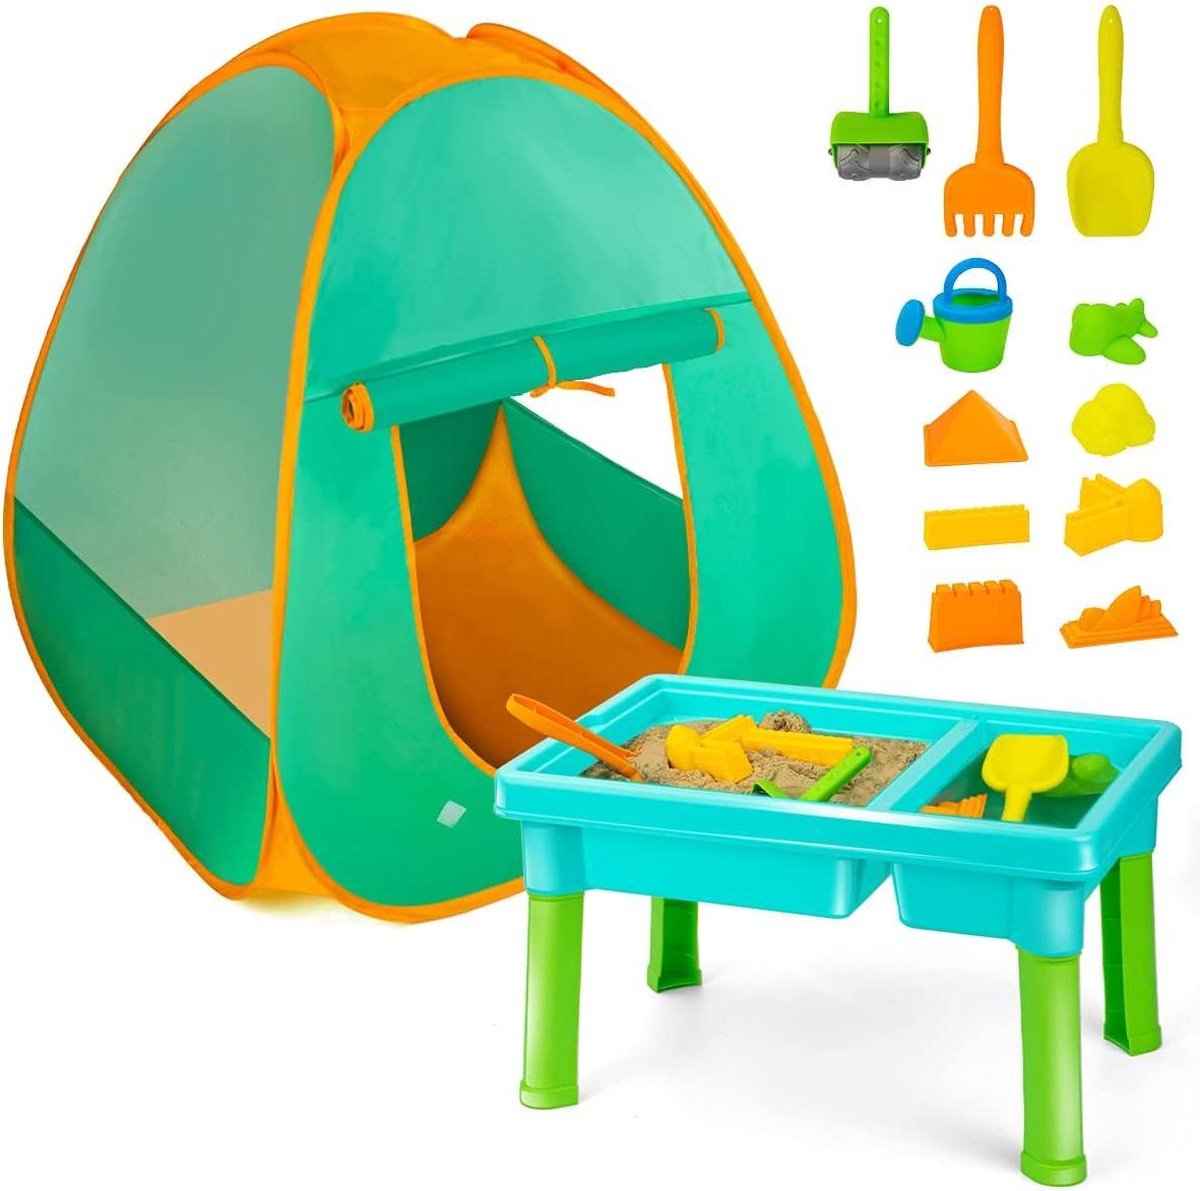 Multifunctionele Zand-en Watertafel voor kinderen met Speeltent - Inclusief 15-delig accessoireset - Buitenspeelgoed - Zandbak - Zandtafel - Waterspeeltafel - Tekentafel - Aquaplay - Upgrade 2021